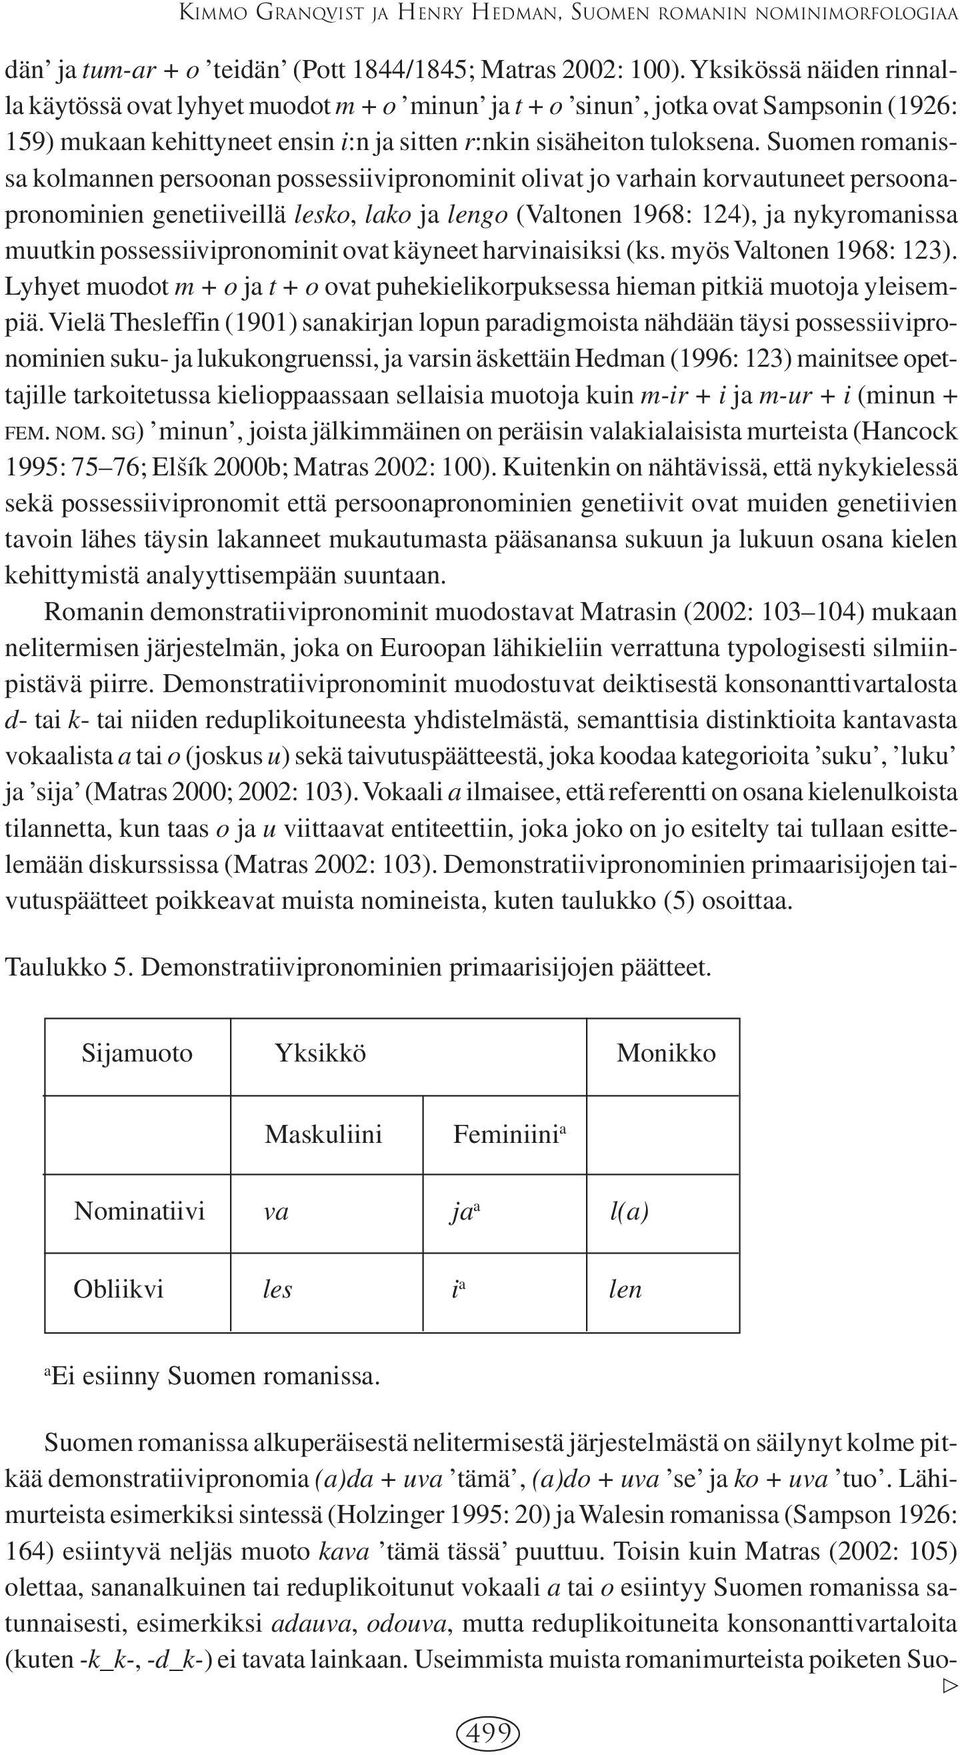 Suomen romanissa kolmannen persoonan possessiivipronominit olivat jo varhain korvautuneet persoonapronominien genetiiveillä lesko, lako ja lengo (Valtonen 1968: 124), ja nykyromanissa muutkin